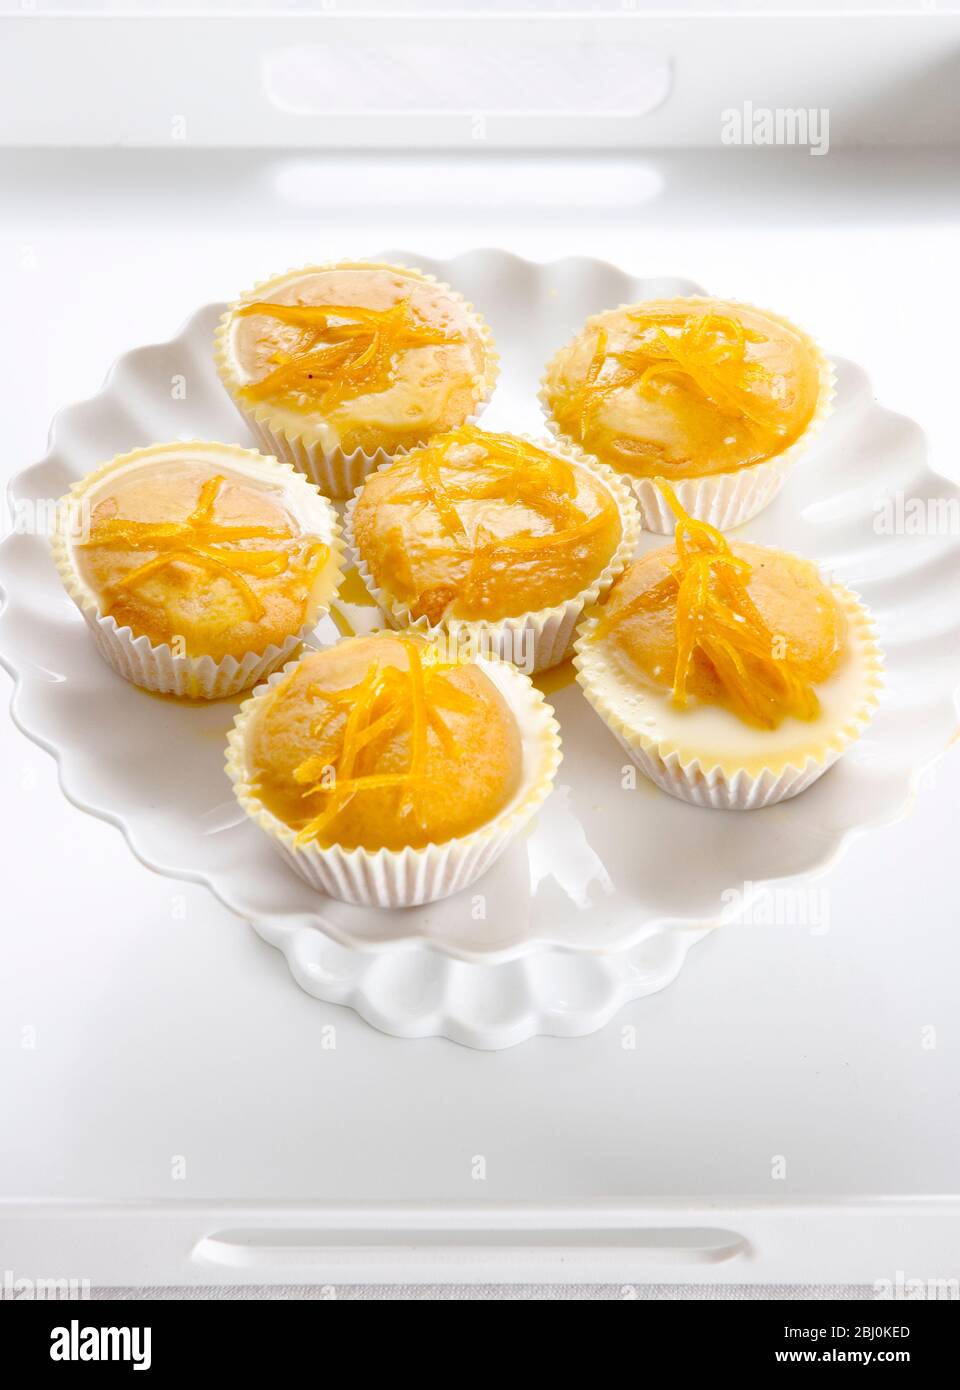 Sechs Zitronenfieselkuchen auf weißem Kuchenständer Stockfoto